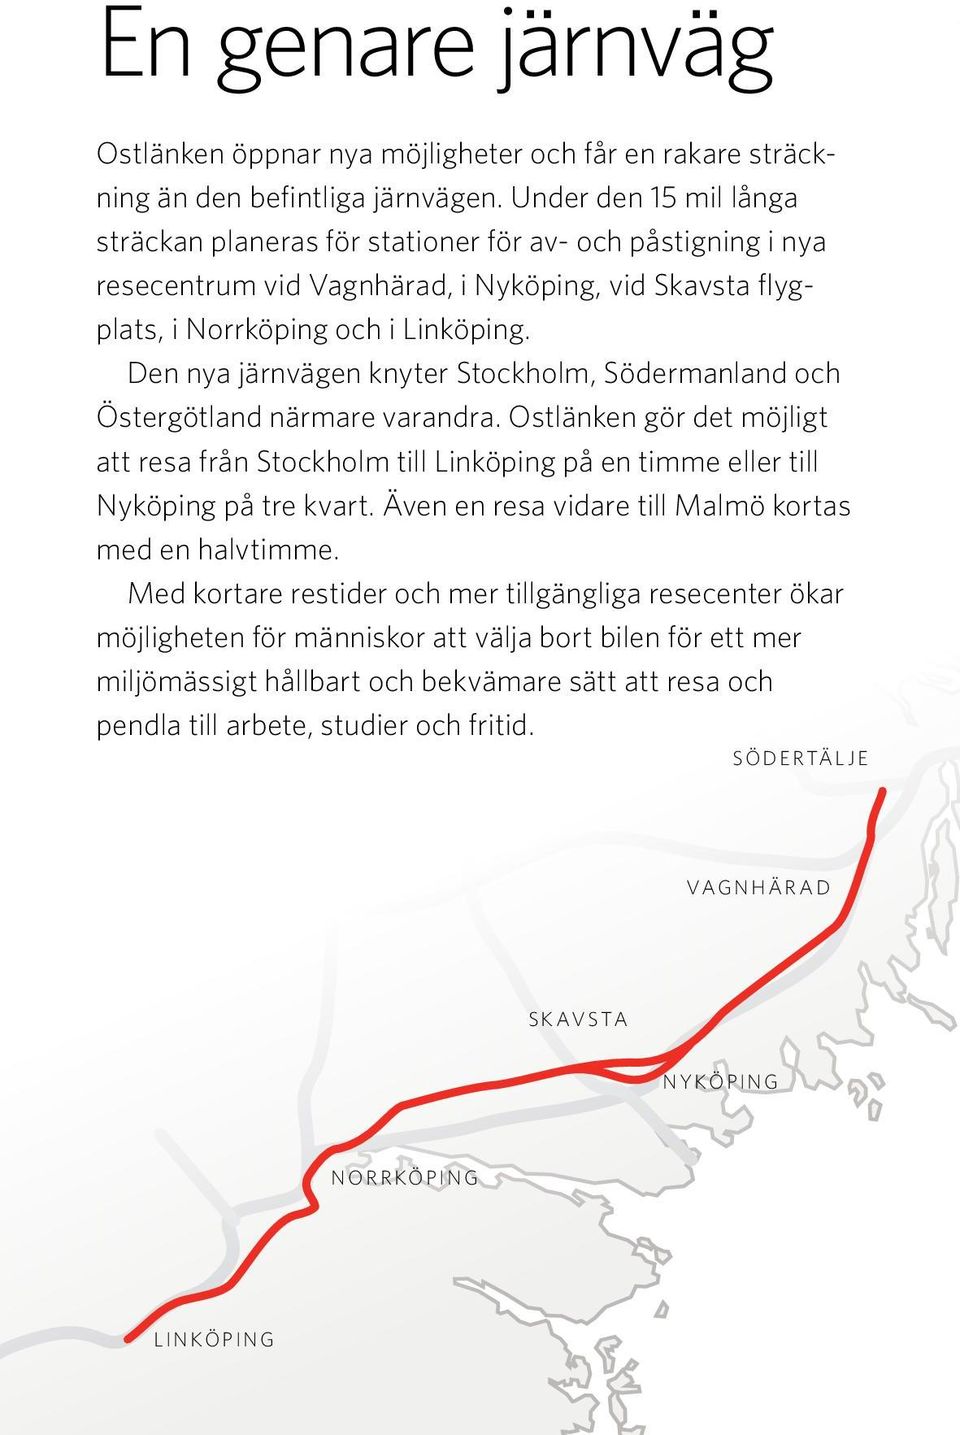 Den nya järnvägen knyter Stockholm, Södermanland och Östergötland närmare varandra. Ostlänken STO gör det möjligt att resa från Stockholm till Linköping på en timme eller till Nyköping på tre kvart.